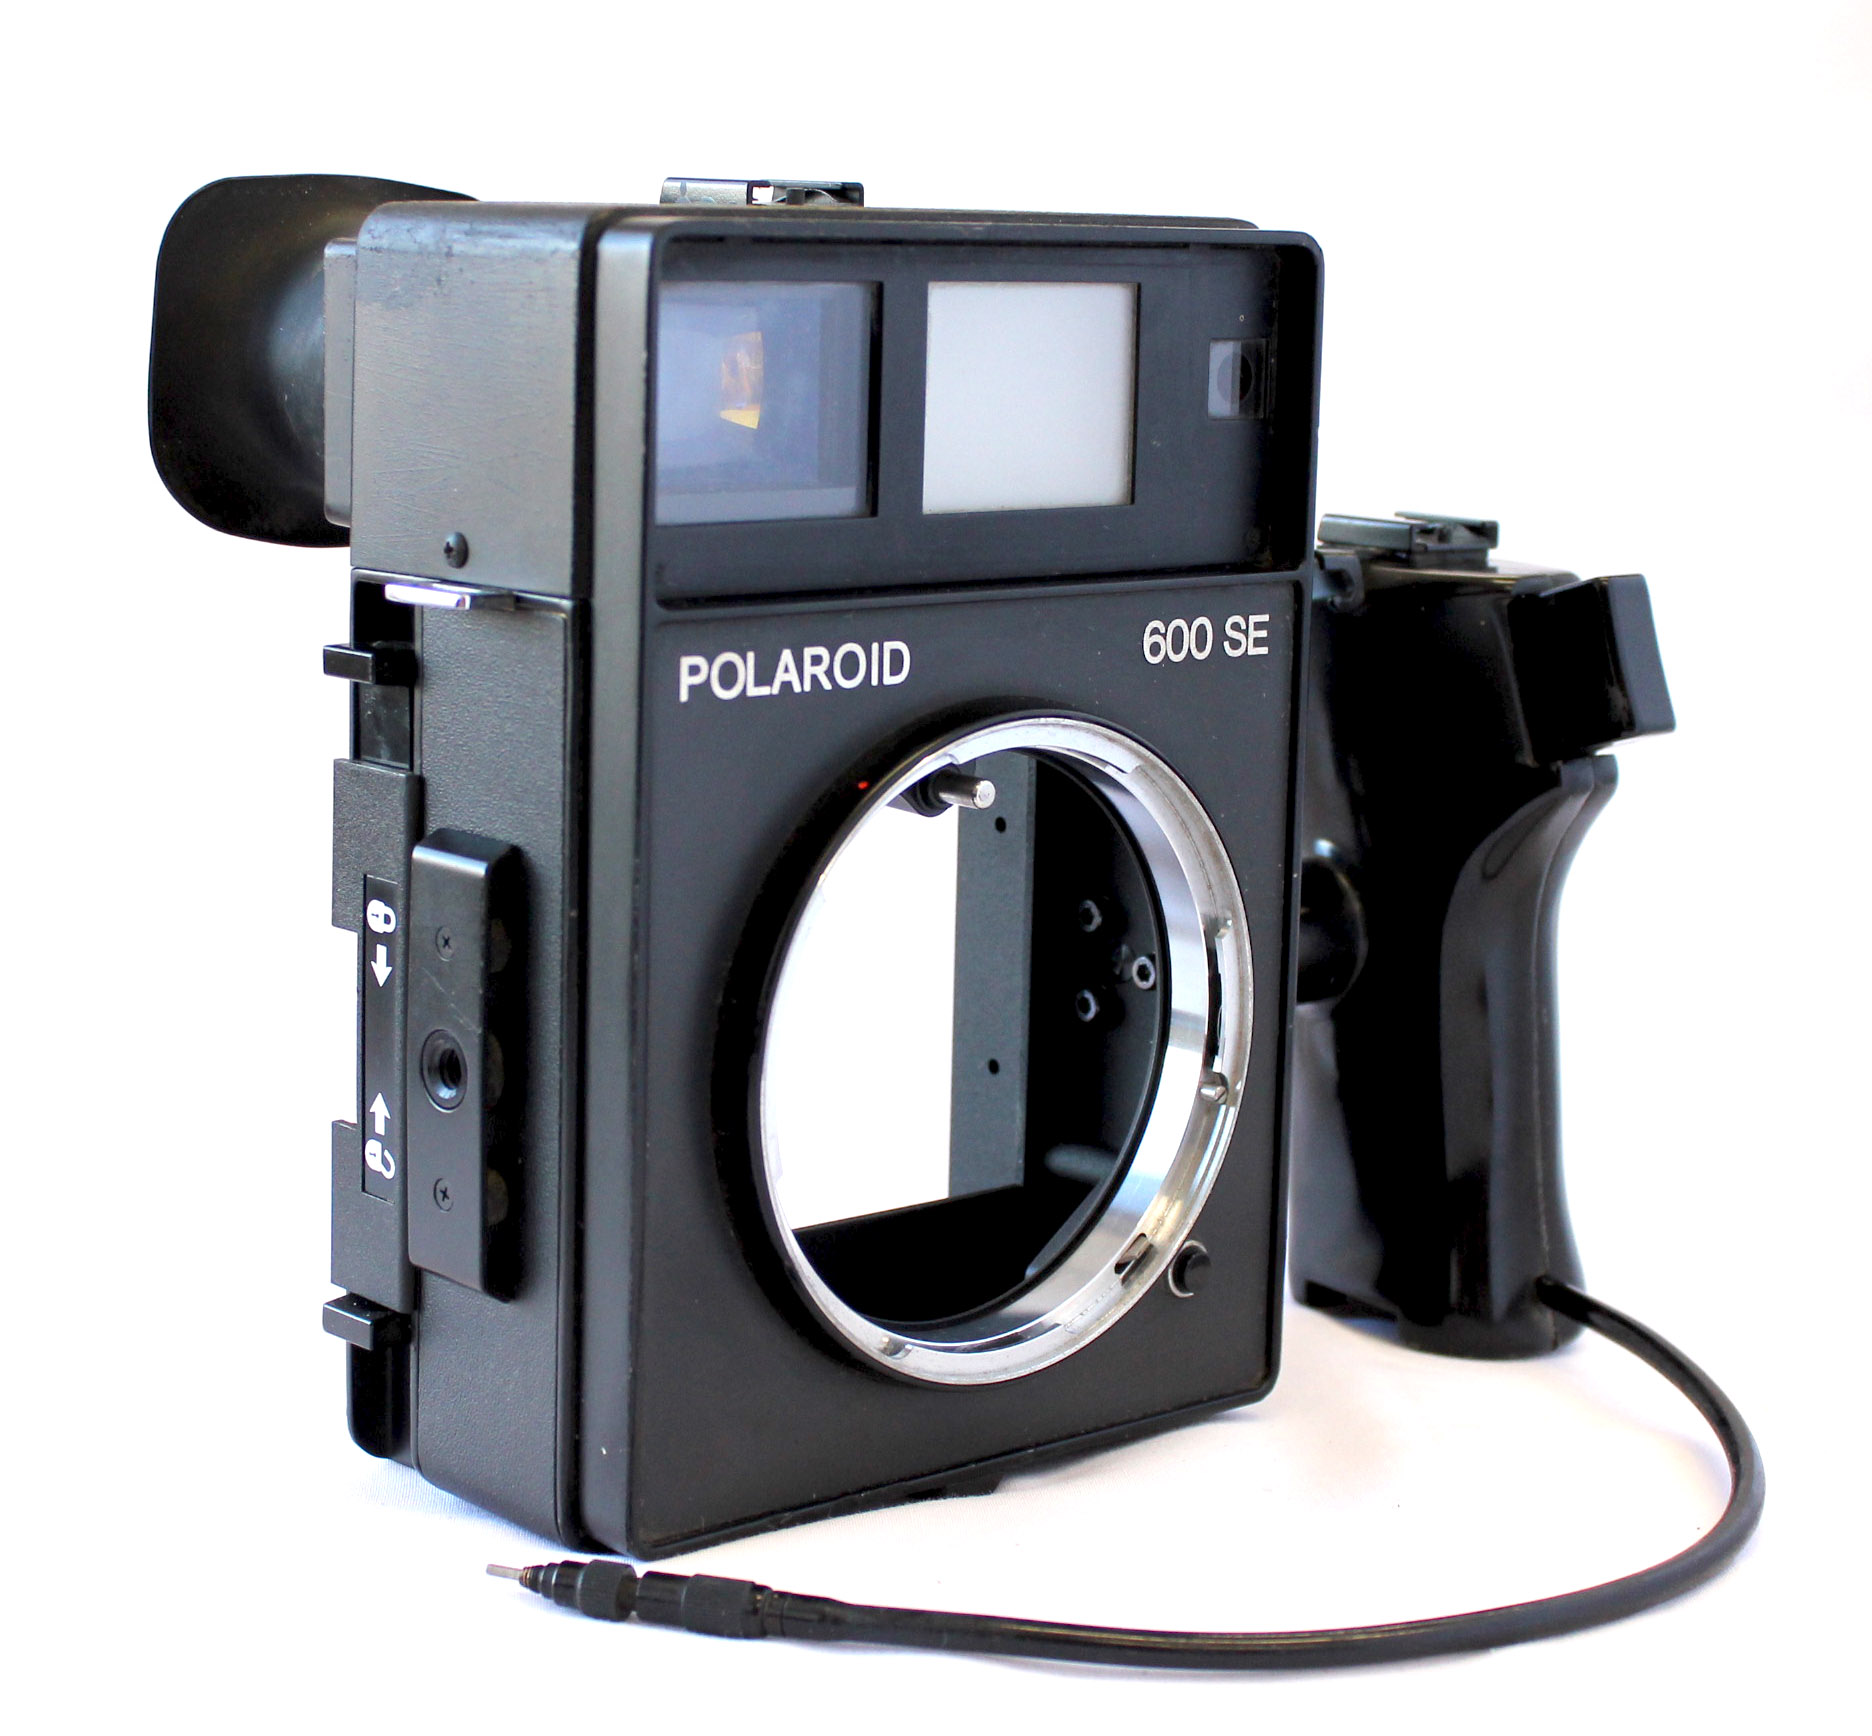  Polaroid 600 SE Instant Camera w/ Mamiya 127mm F/4.7 Lens and Polaroid Back from Japan Photo 2